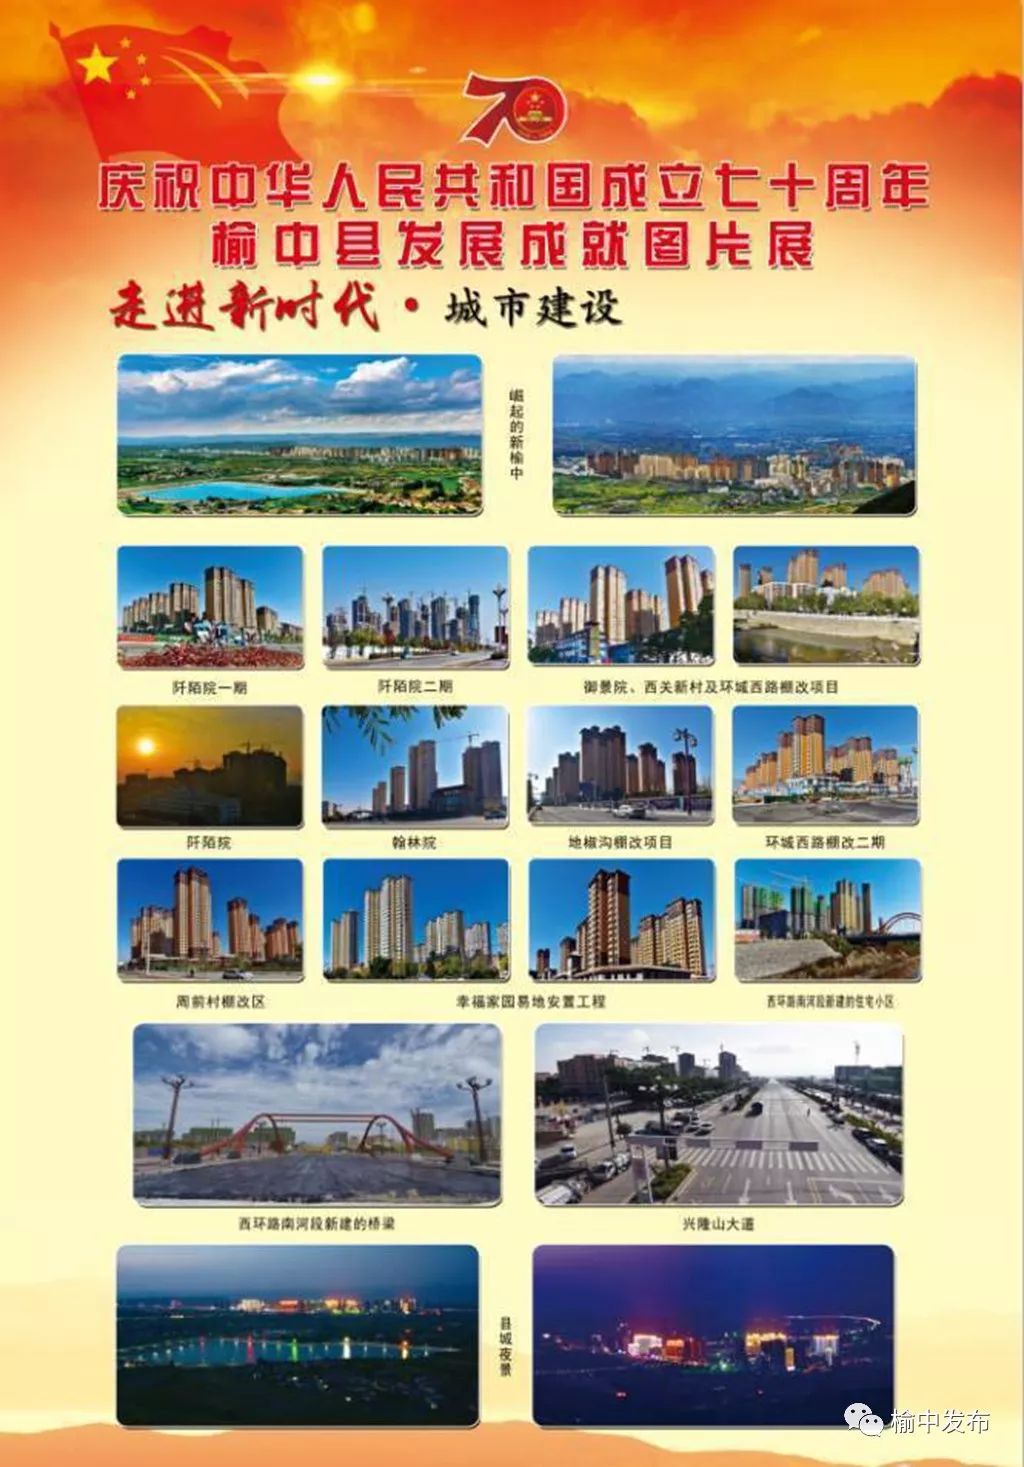 榆中县举办发展成就图片展庆祝中华人民共和国成立七十周年